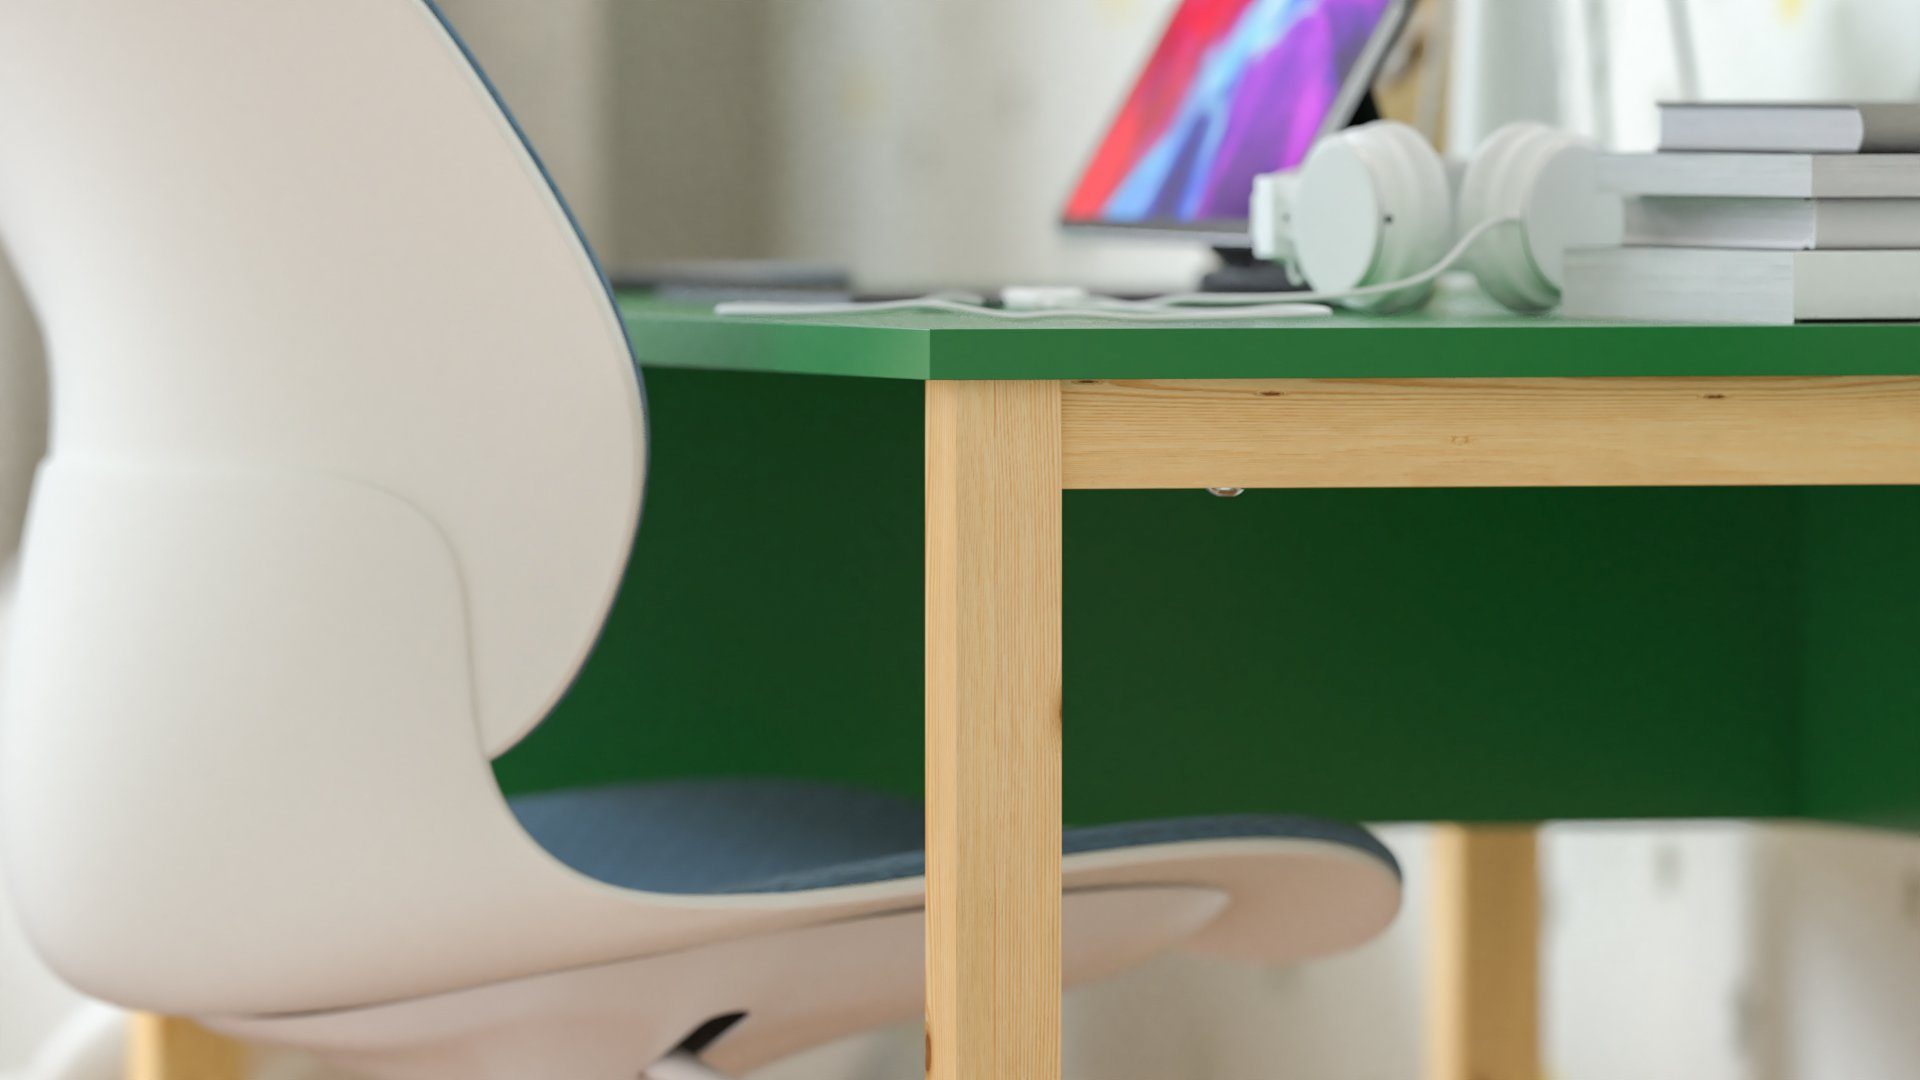 - Grün Klein Schreibtische Siblo Schreibtisch - Computertisch Kinderschreibtische